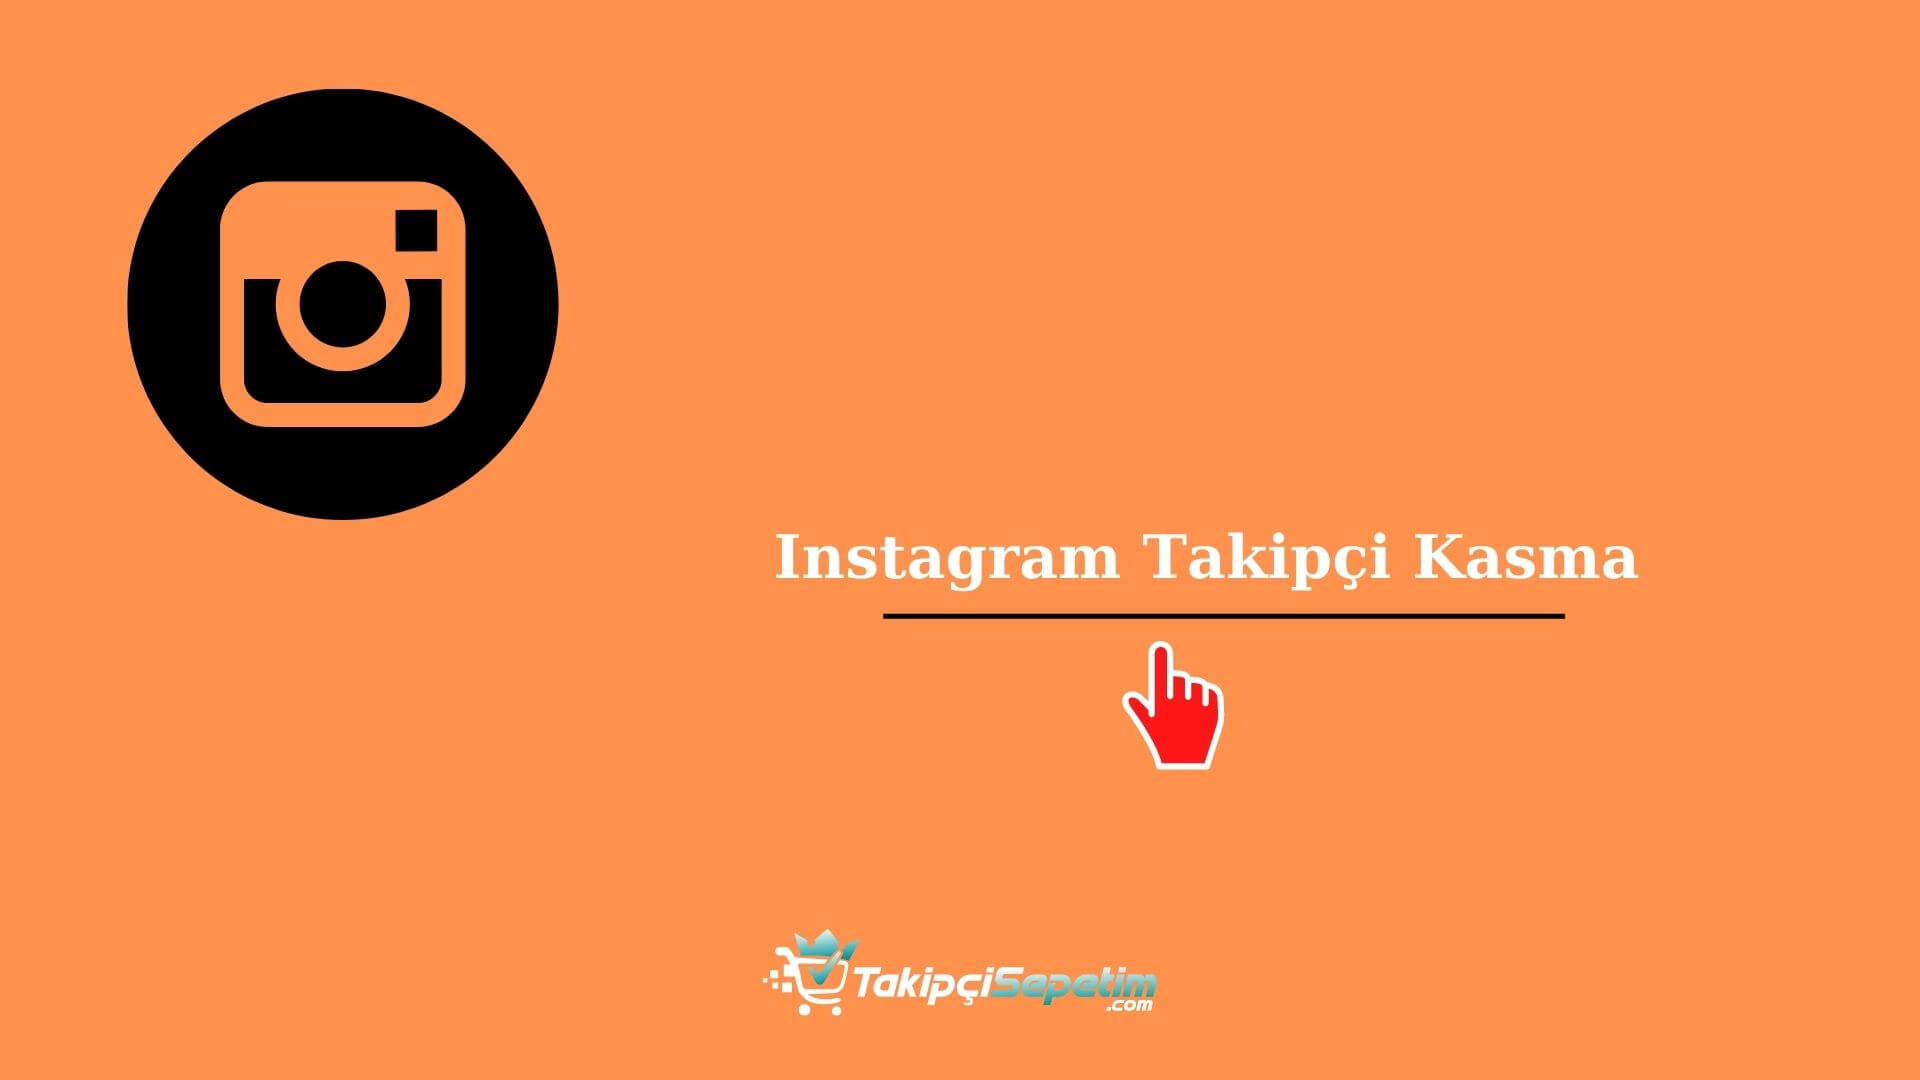 Instagram Takipçi Kasma - Ücretsiz Şifresiz Takipçi Kasma